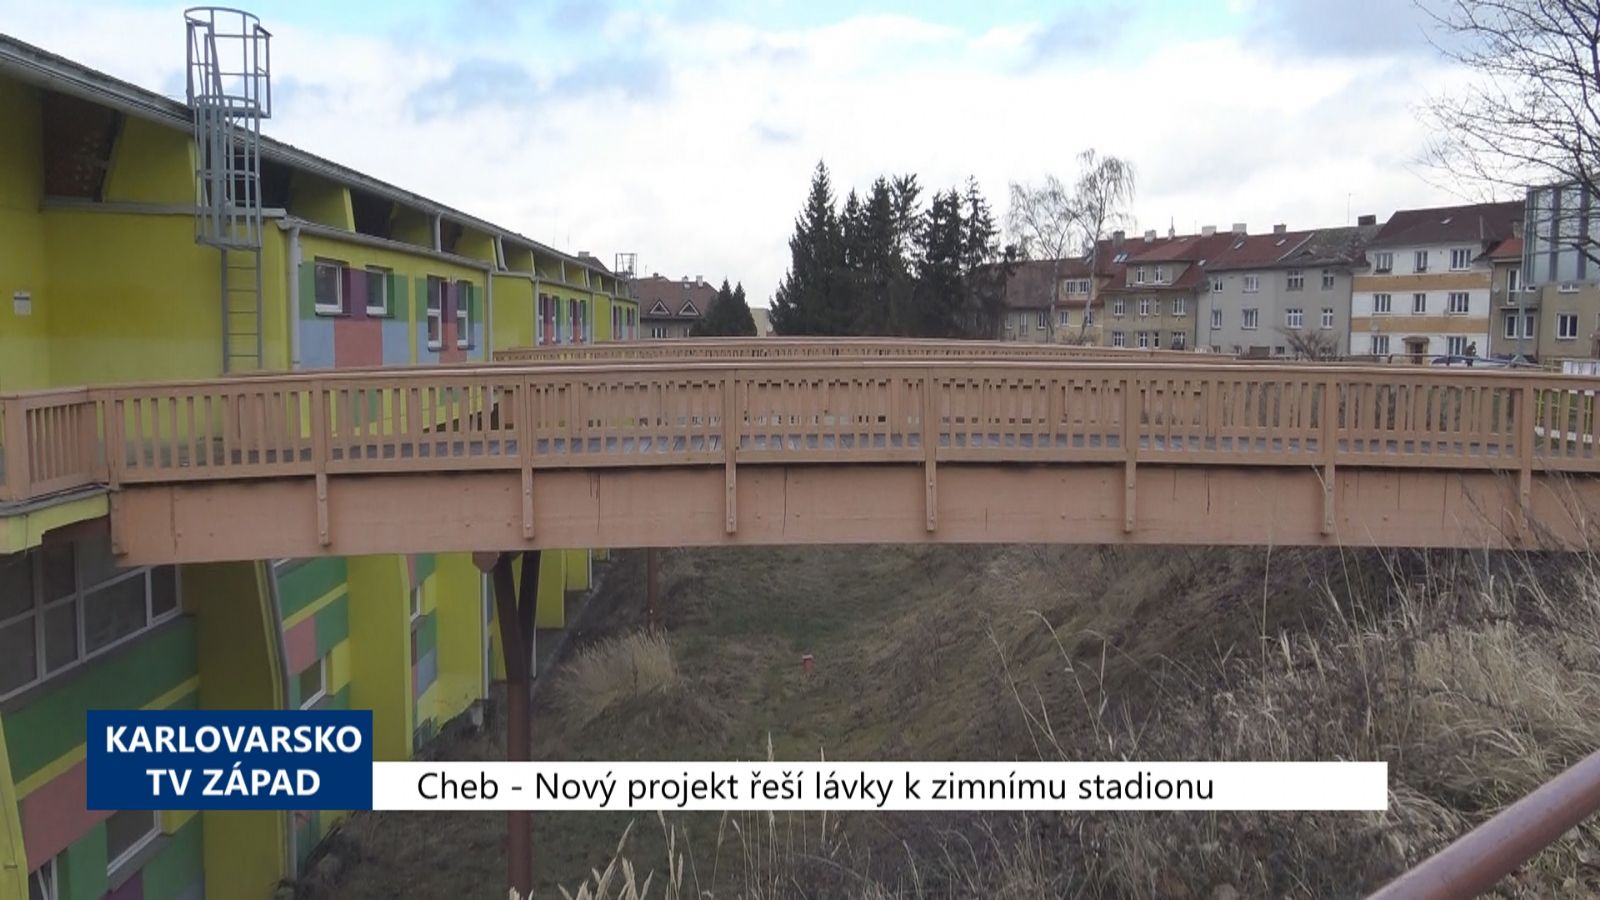 Cheb: Nový projekt řeší lávky k zimnímu stadionu (TV Západ)